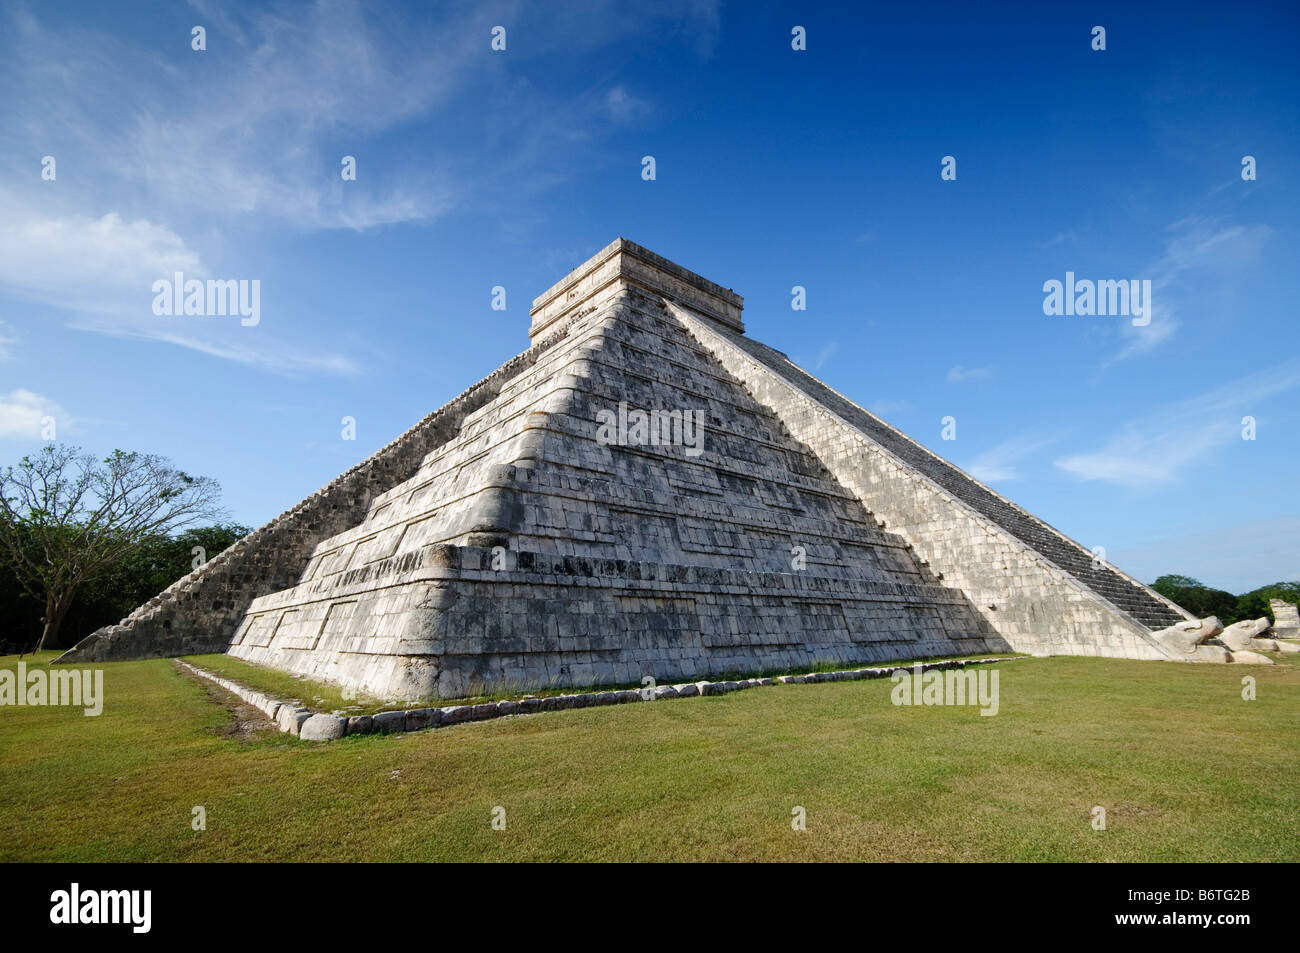 CHICHEN ITZA, Mexiko - El Castillo (auch bekannt als Tempel von Kuklcan) an den antiken Maya-Ruinen in Chichen Itza, Yucatan, Mexiko 081216093012 4429.NEF. Chichen Itza befindet sich auf der Yucatan-Halbinsel in Mexiko und ist eine bedeutende archäologische Stätte, die die reiche Geschichte und fortgeschrittene wissenschaftliche Kenntnisse der alten Maya-Zivilisation zeigt. Sie ist vor allem bekannt für die Kukulkan Pyramide, oder „El Castillo“, eine vierseitige Struktur mit 91 Stufen auf jeder Seite, die in einem einzigen Schritt auf der Spitze gipfelt, um die 365 Tage des Sonnenjahres zu repräsentieren. Stockfoto